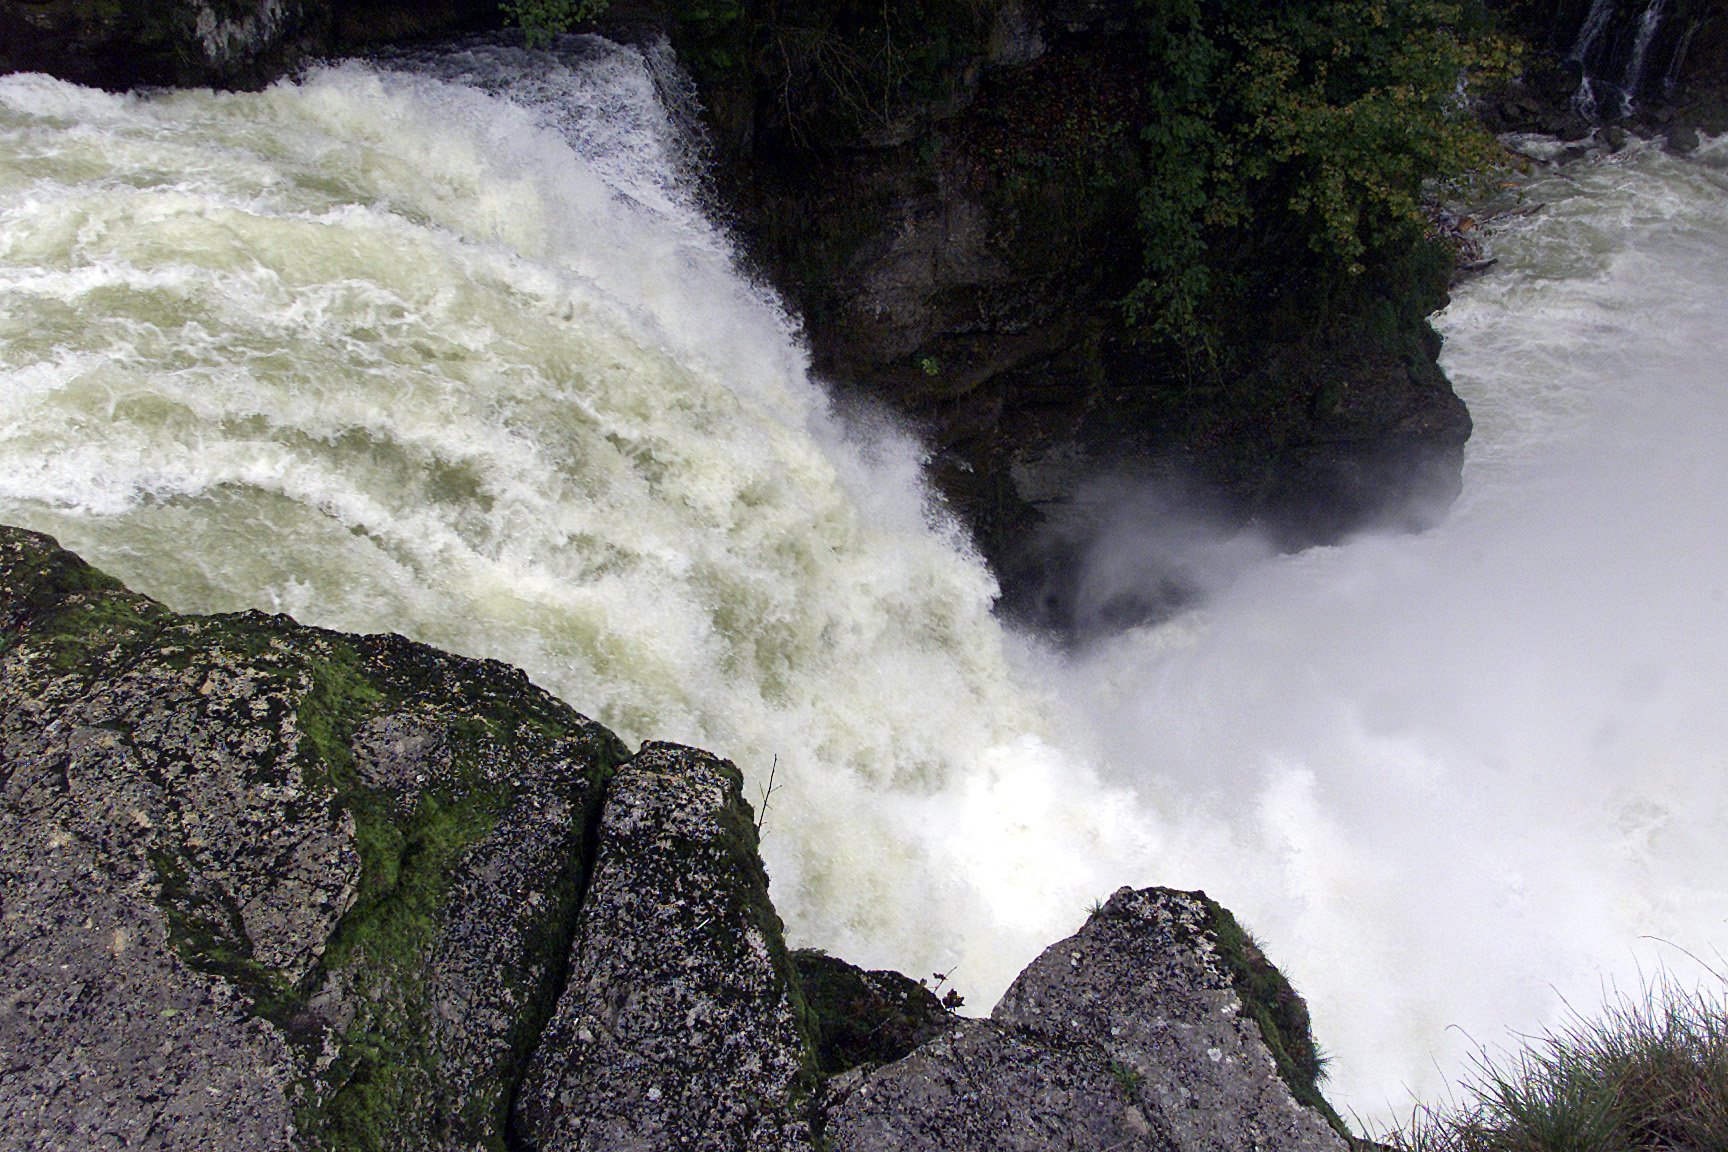 Le débit de la chute du Saut-du-Doubs était optimal pour un saut extraordinaire en kayak.